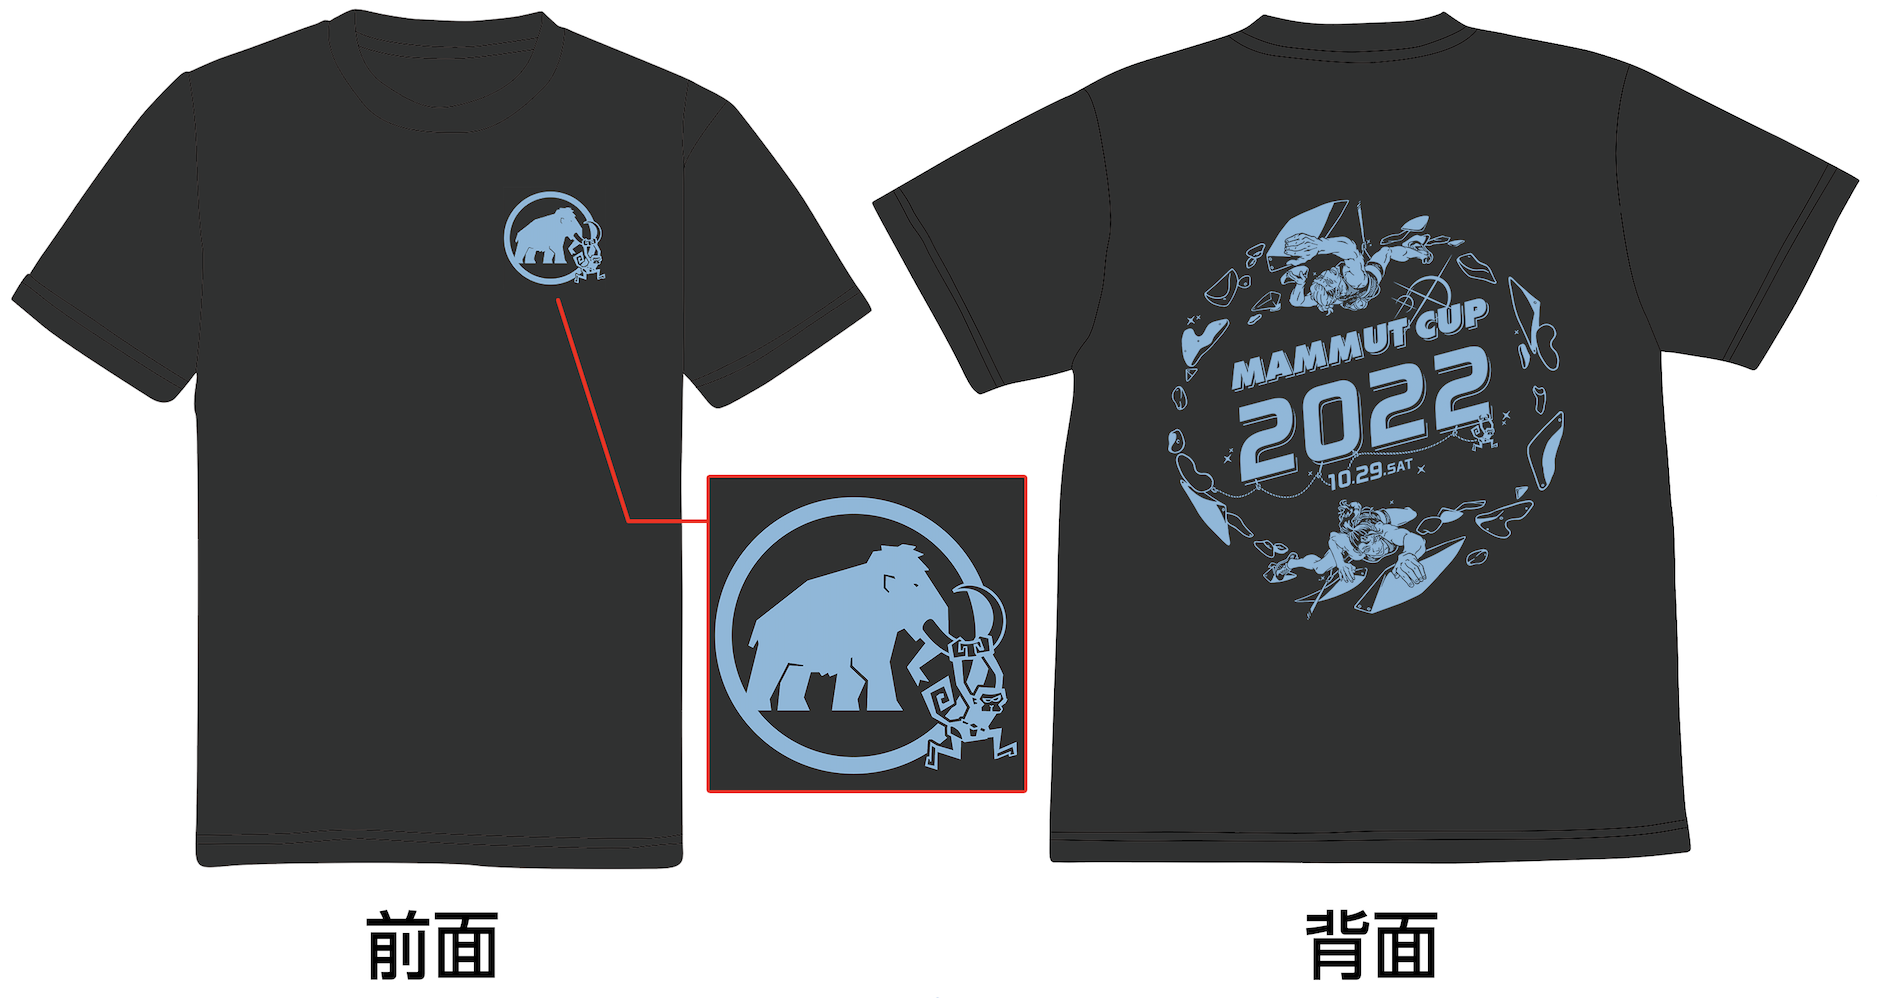 MAMMUT CUP 2022 オリジナルTシャツ一般販売について